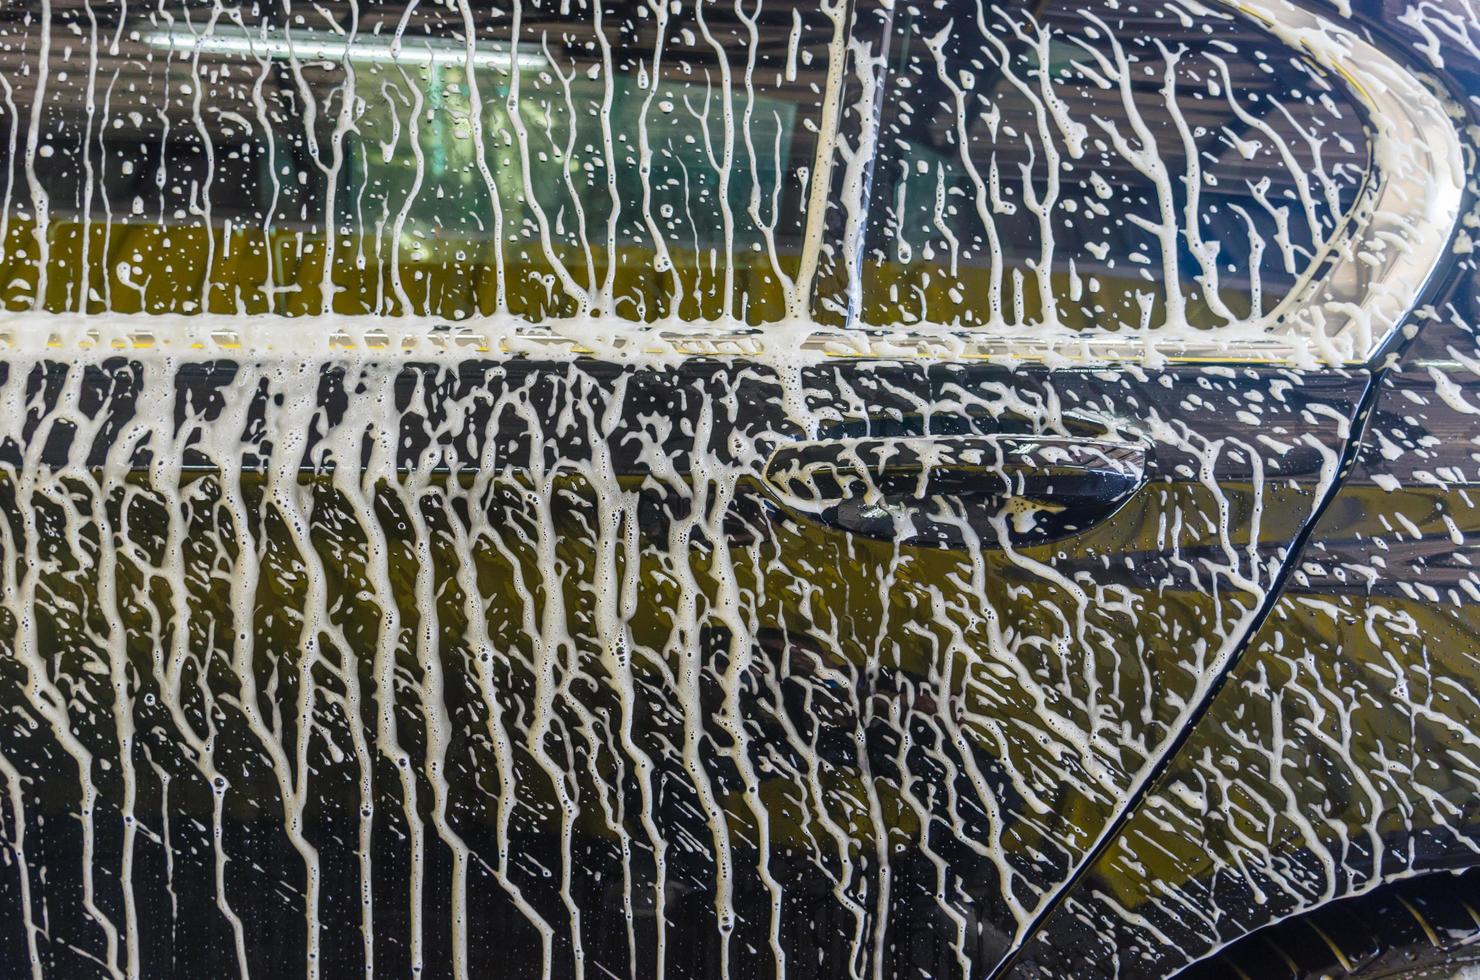 lavage de voiture avec mousse photo